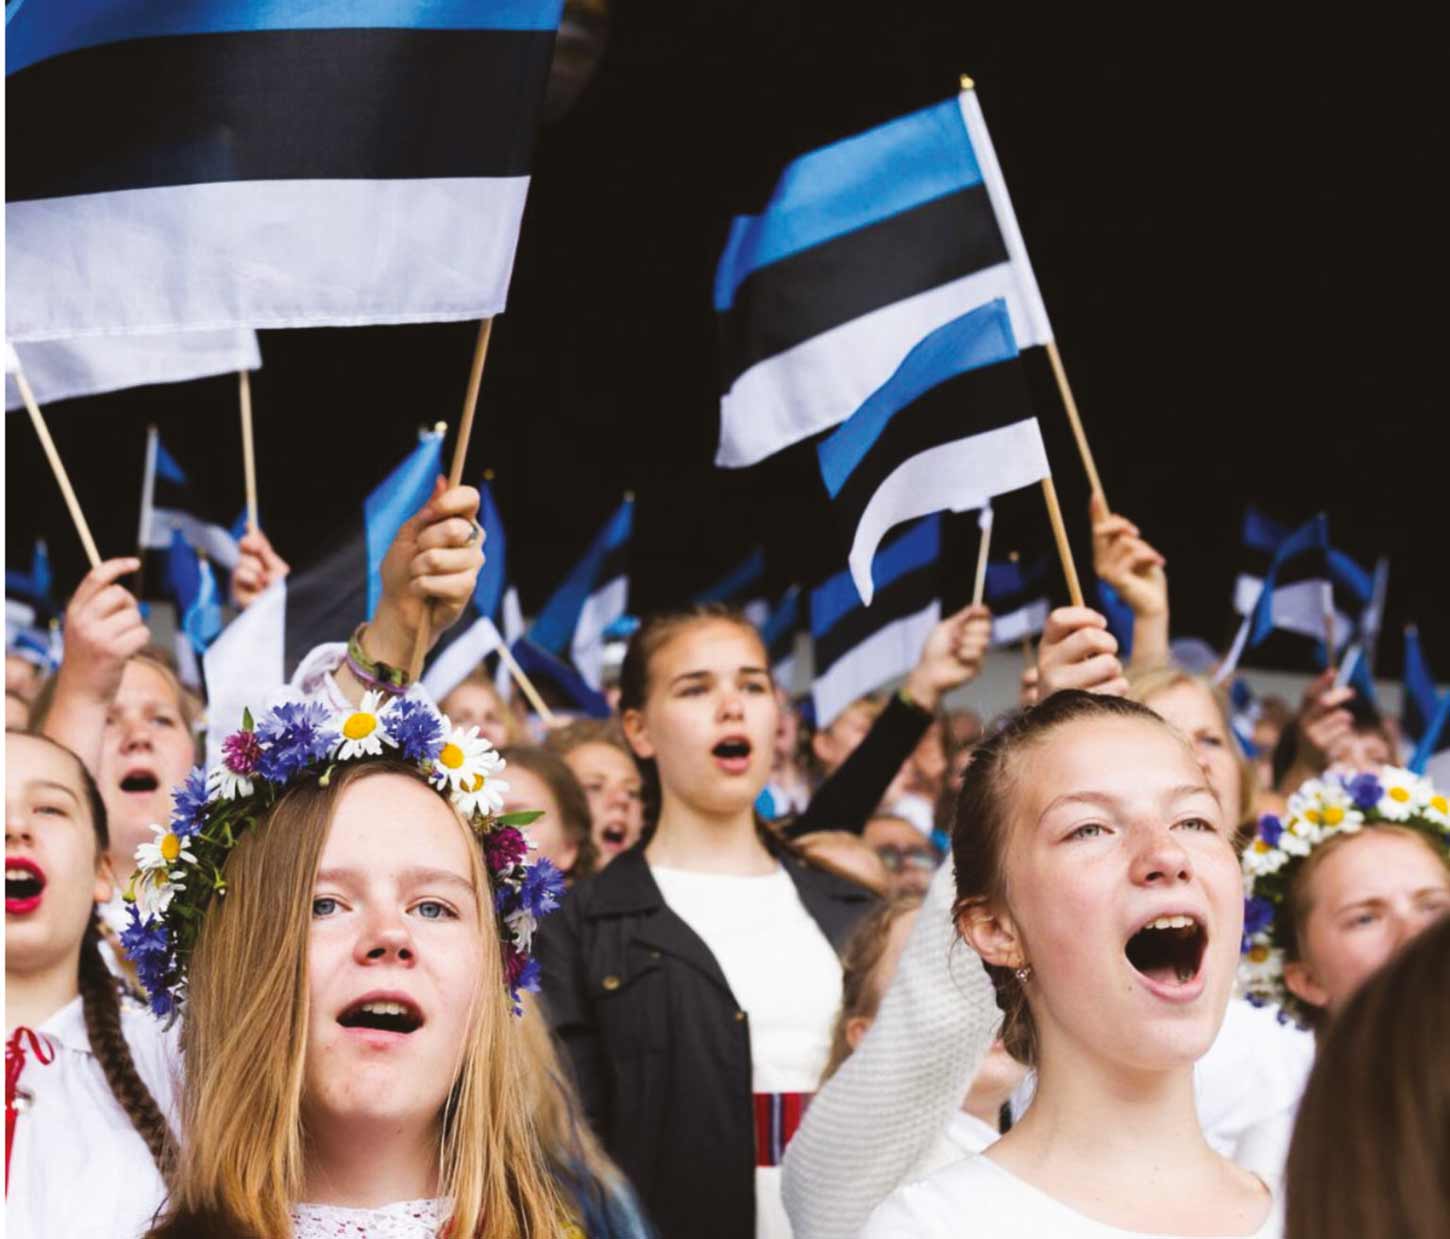 Gemeinsames Singen ist in Estland weit verbreitet. Das Usedomer Musikfestival würdigt das mit einem eigenen Programm. Fotos: © Sony Pictures (the song of names); usedomer musikfestival (sängerfest, thomas hummel); david_franklin (buch) © stock.adobe.com